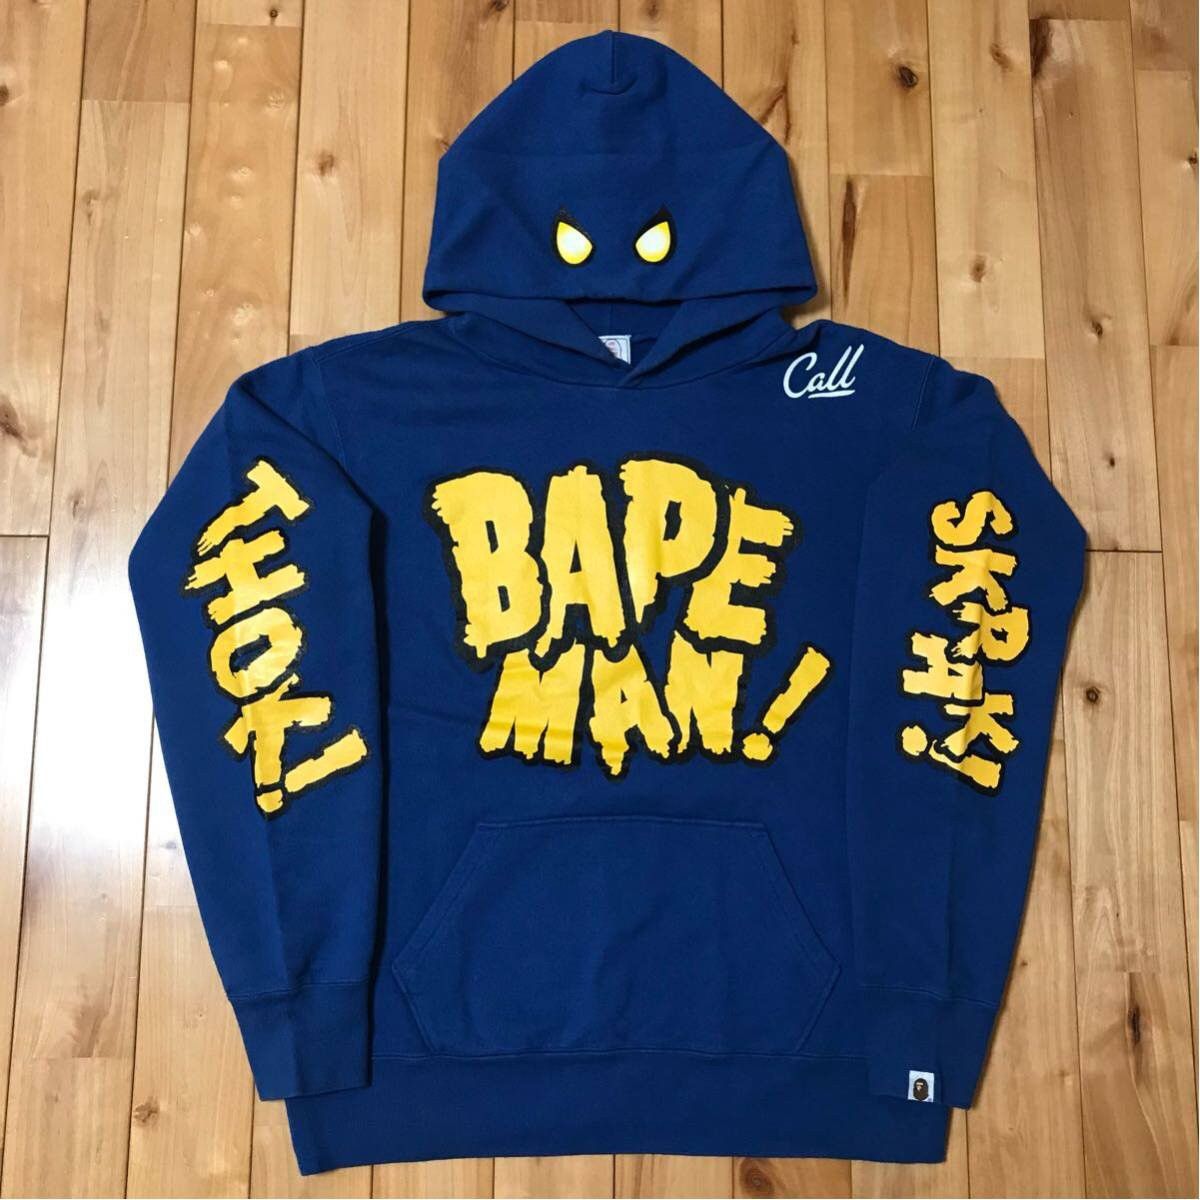 Bape BAPEMAN pullover hoodie Vintage BAPE a bathing ape NIGO | Grailed